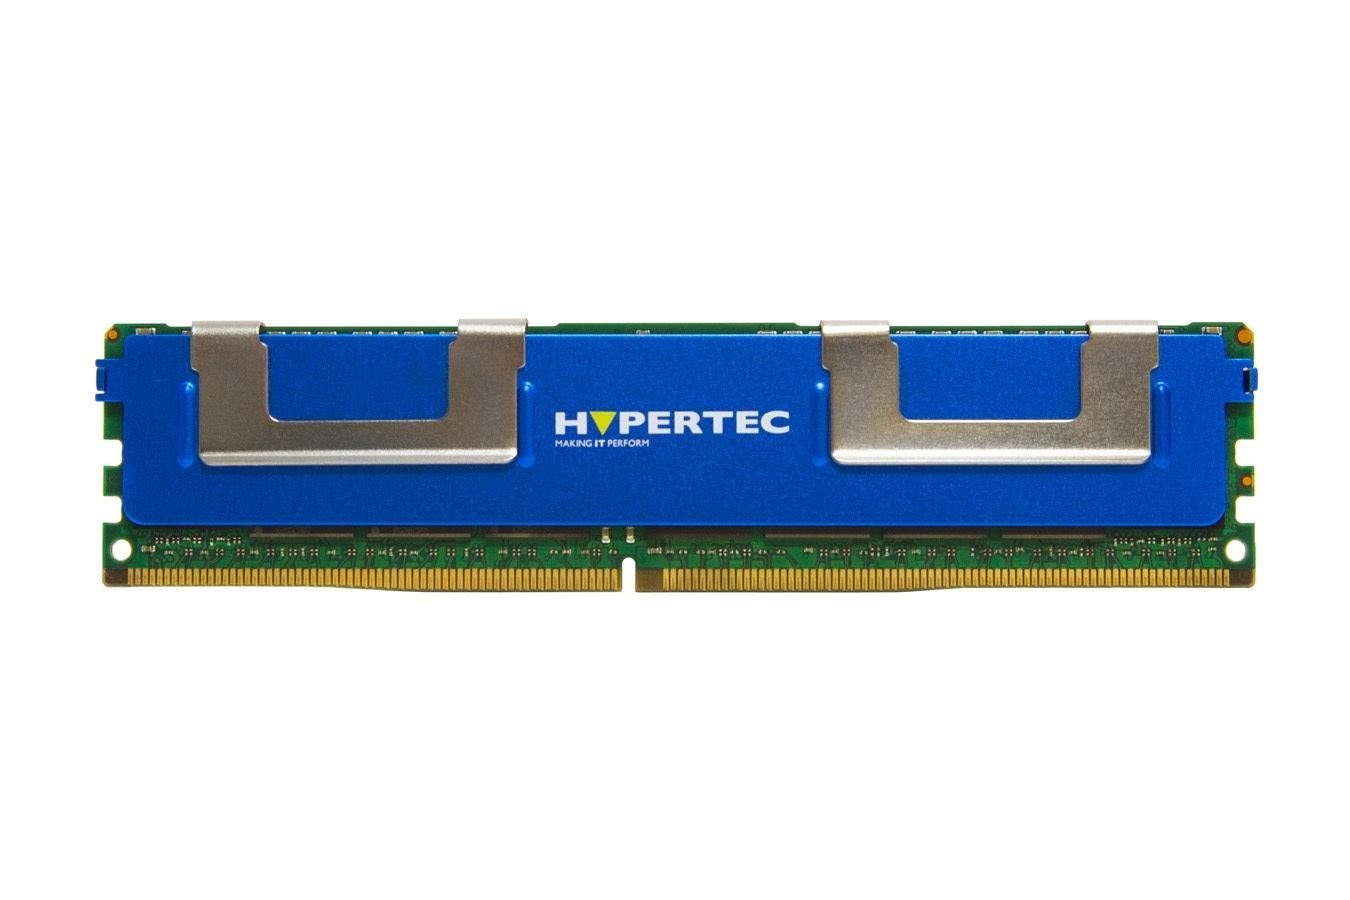 Hypertec 0A89412-Hy Memory Module 8 GB DDR3 1333 MHz Ecc (A Lenovo Equivalent 8 GB Dual Rank - Registered Ecc DDR3 Sdram - Dimm 240-Pin 1333 MHz [ PC3-10600 ]Legacy [1Year Warranty])